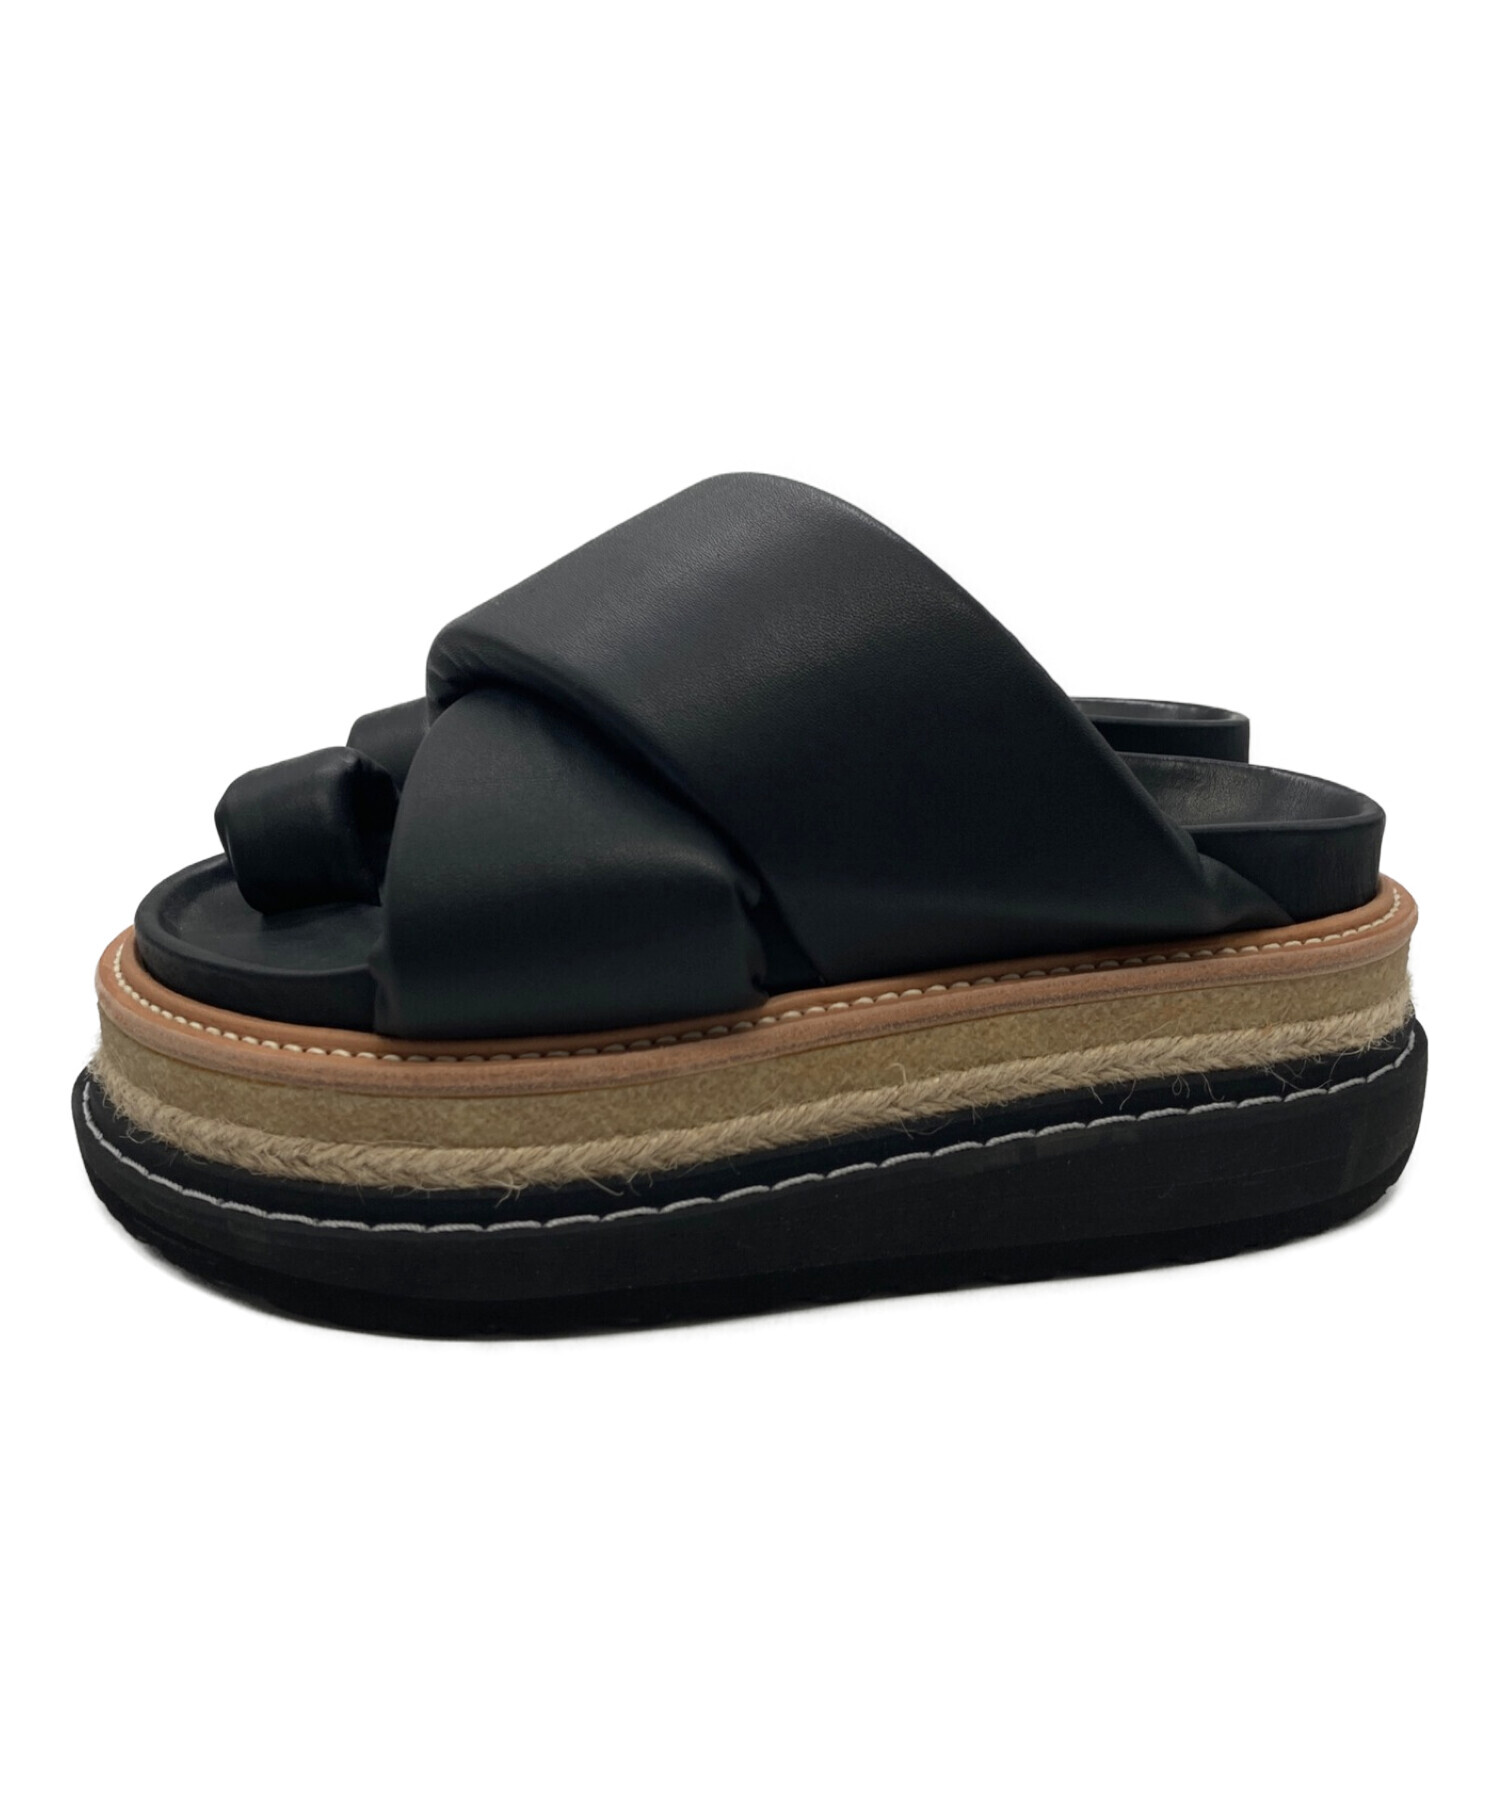 中古・古着通販】sacai (サカイ) Multiple Sole Sandals ブラック